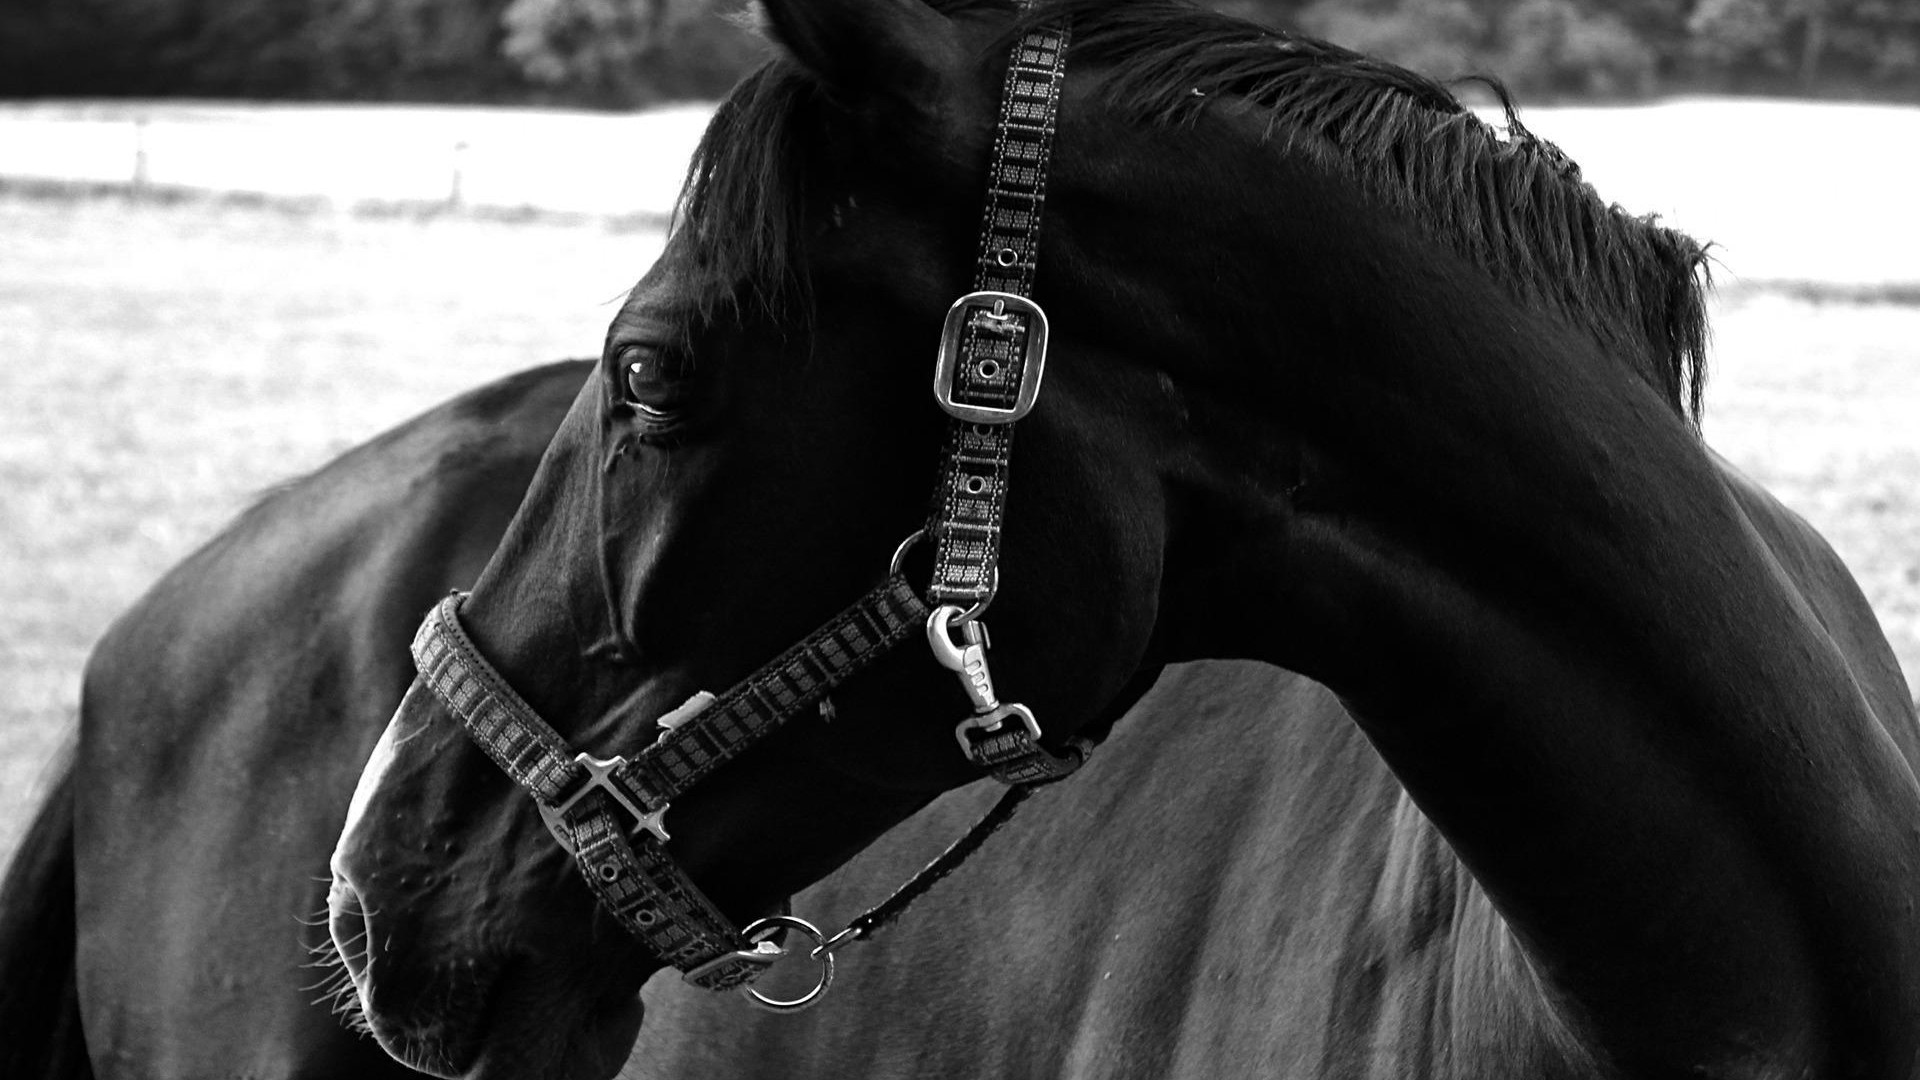 tiefschwarze tapete,schwarz,pferd,schwarz und weiß,zaum,fotografie